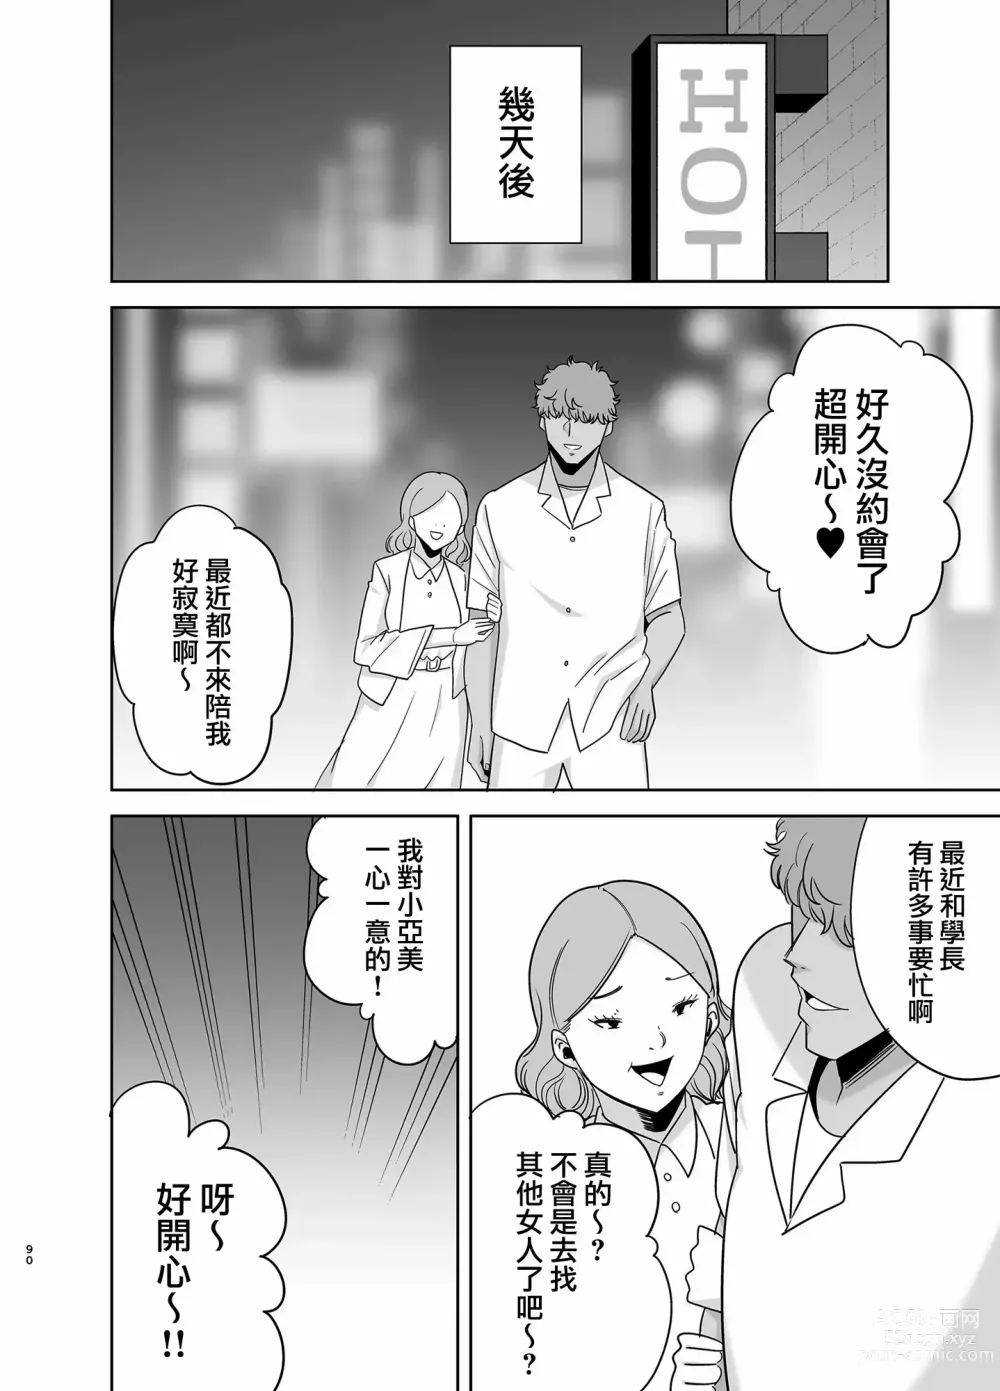 Page 193 of doujinshi 夏天的妻子 1+2